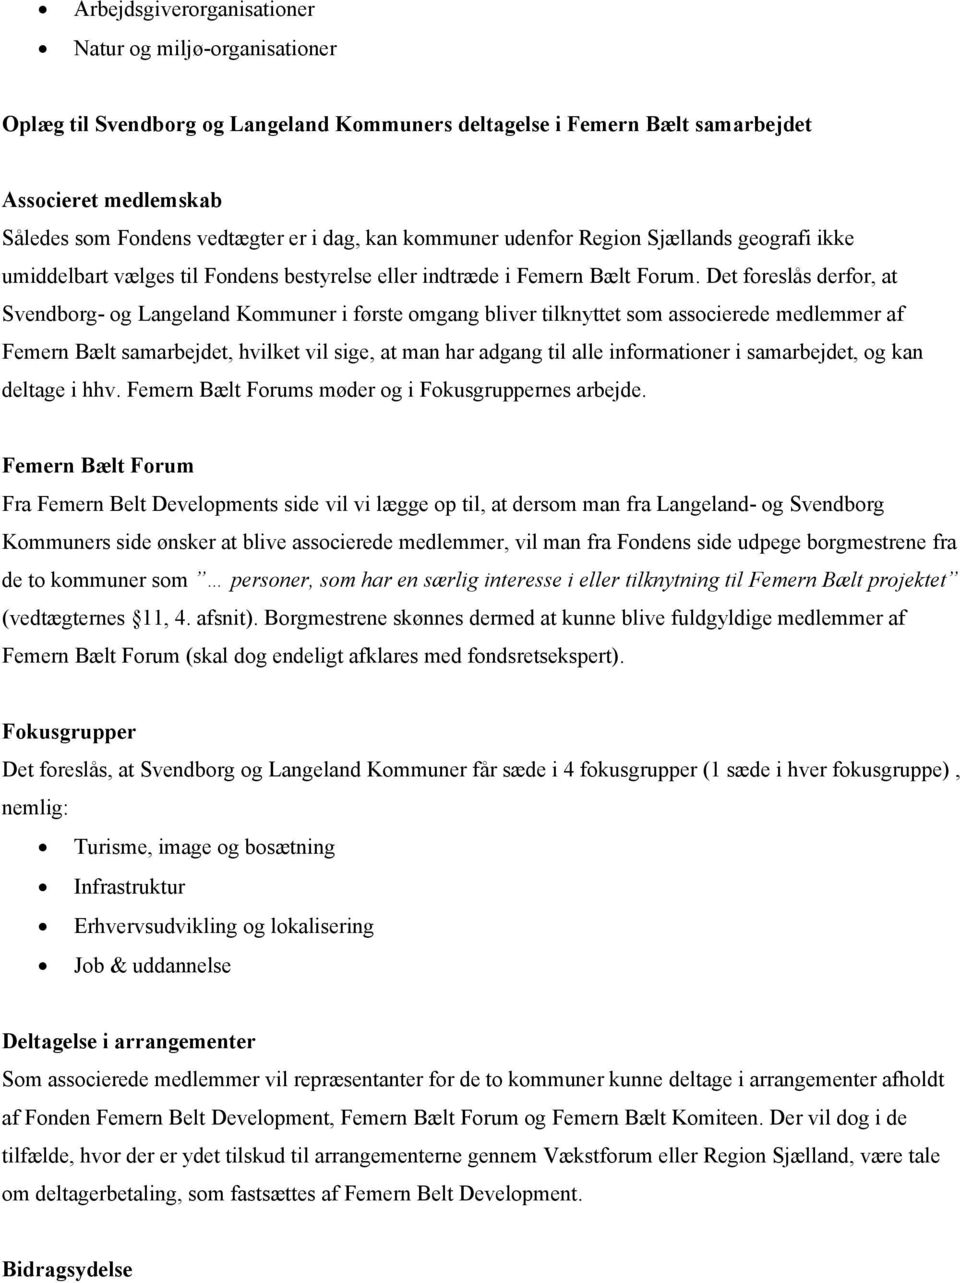 Det foreslås derfor, at Svendborg- og Langeland Kommuner i første omgang bliver tilknyttet som associerede medlemmer af Femern Bælt samarbejdet, hvilket vil sige, at man har adgang til alle